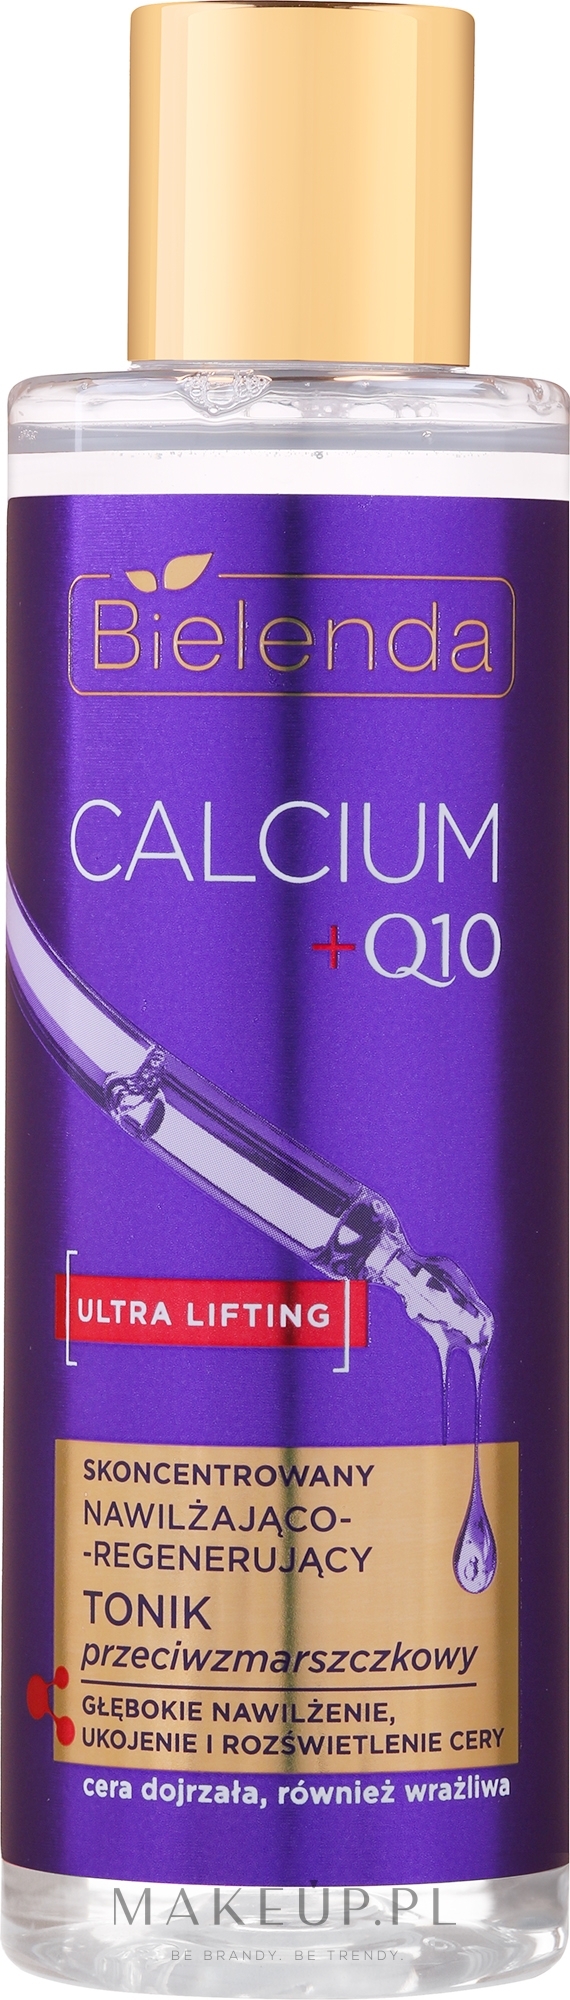 Skoncentrowany nawilżająco-regenerujący tonik przeciwzmarszczkowy do twarzy - Bielenda Calcium + Q10 — Zdjęcie 200 ml